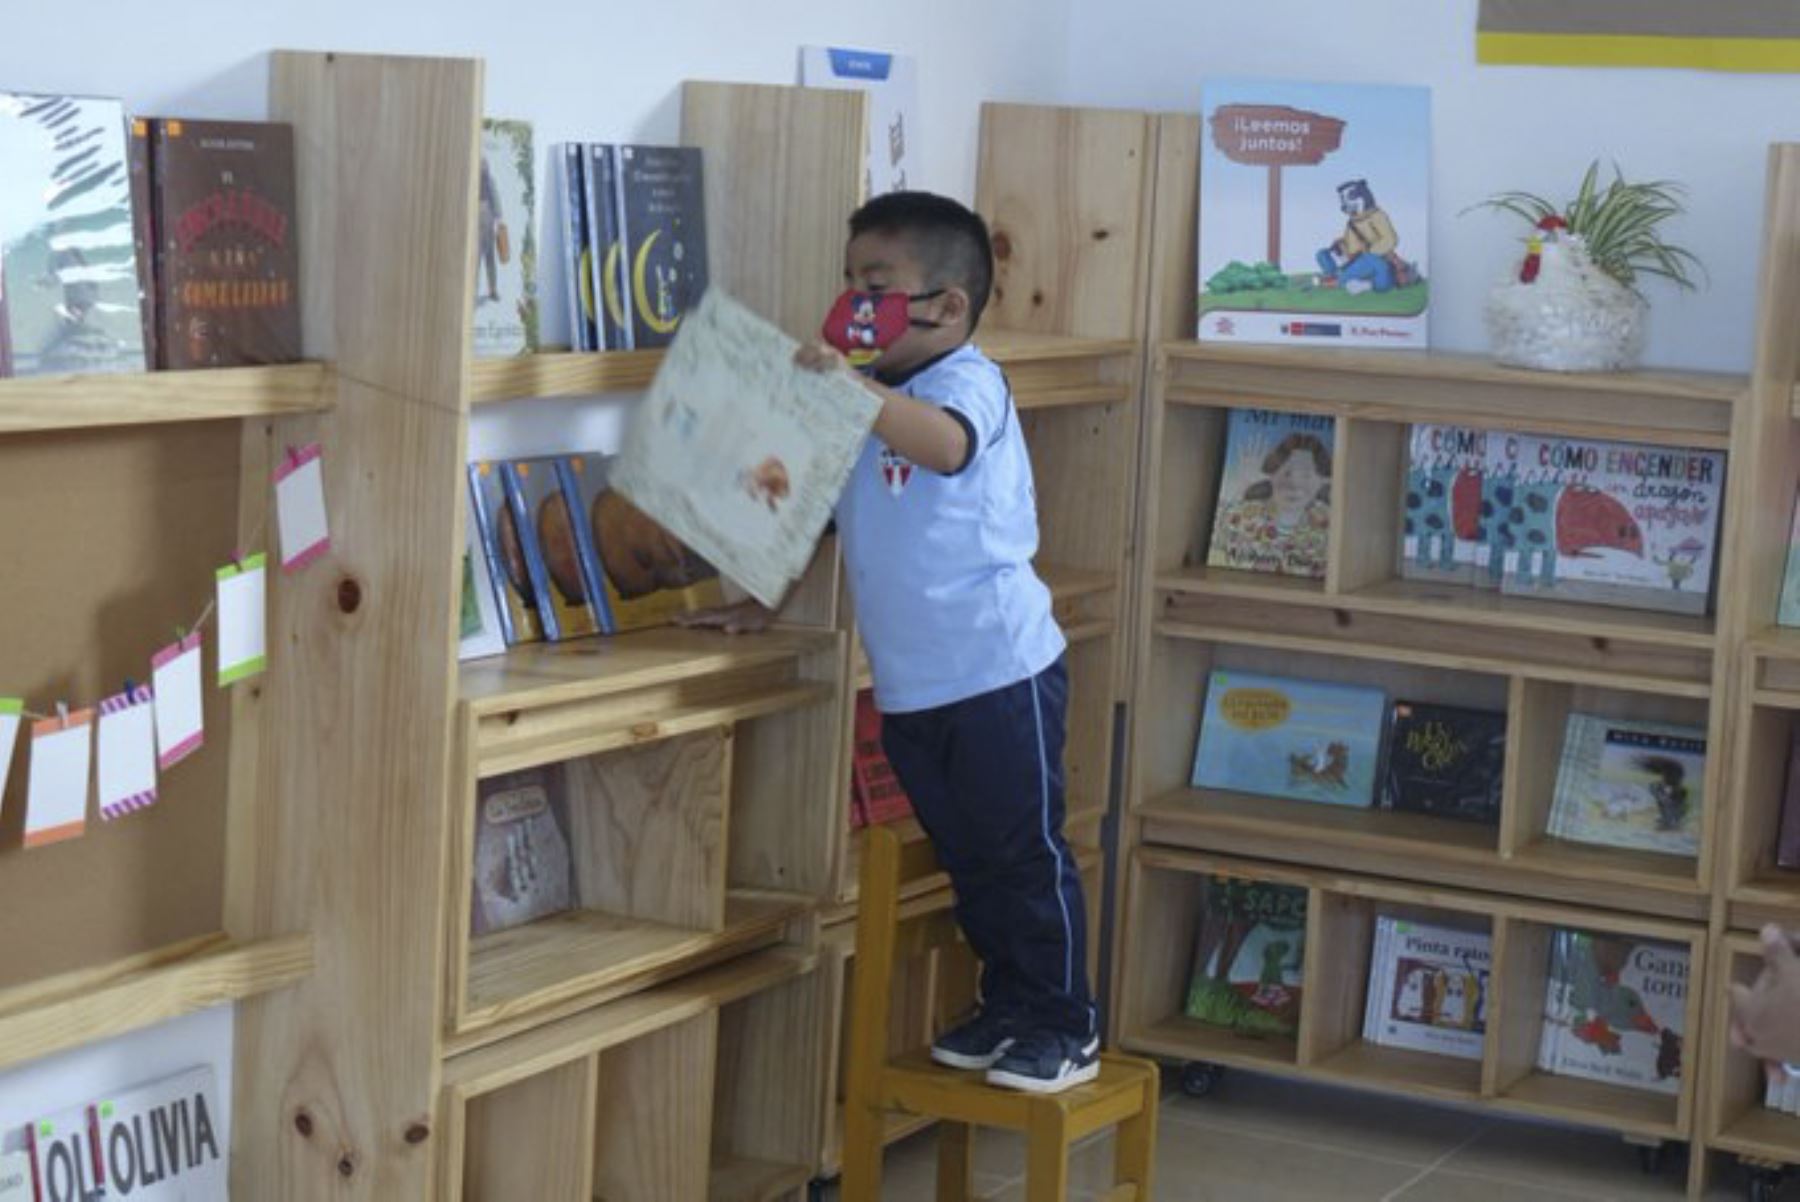 El ministro de Educación, Martín Benavides, junto a la primera dama, Marisol Díaz, inauguraron la segunda biblioteca del proyecto “Bibliotecas comunitarias” en la institución educativa N° 5135 del distrito de Ventanilla, en el Callao. Foto: Minedu